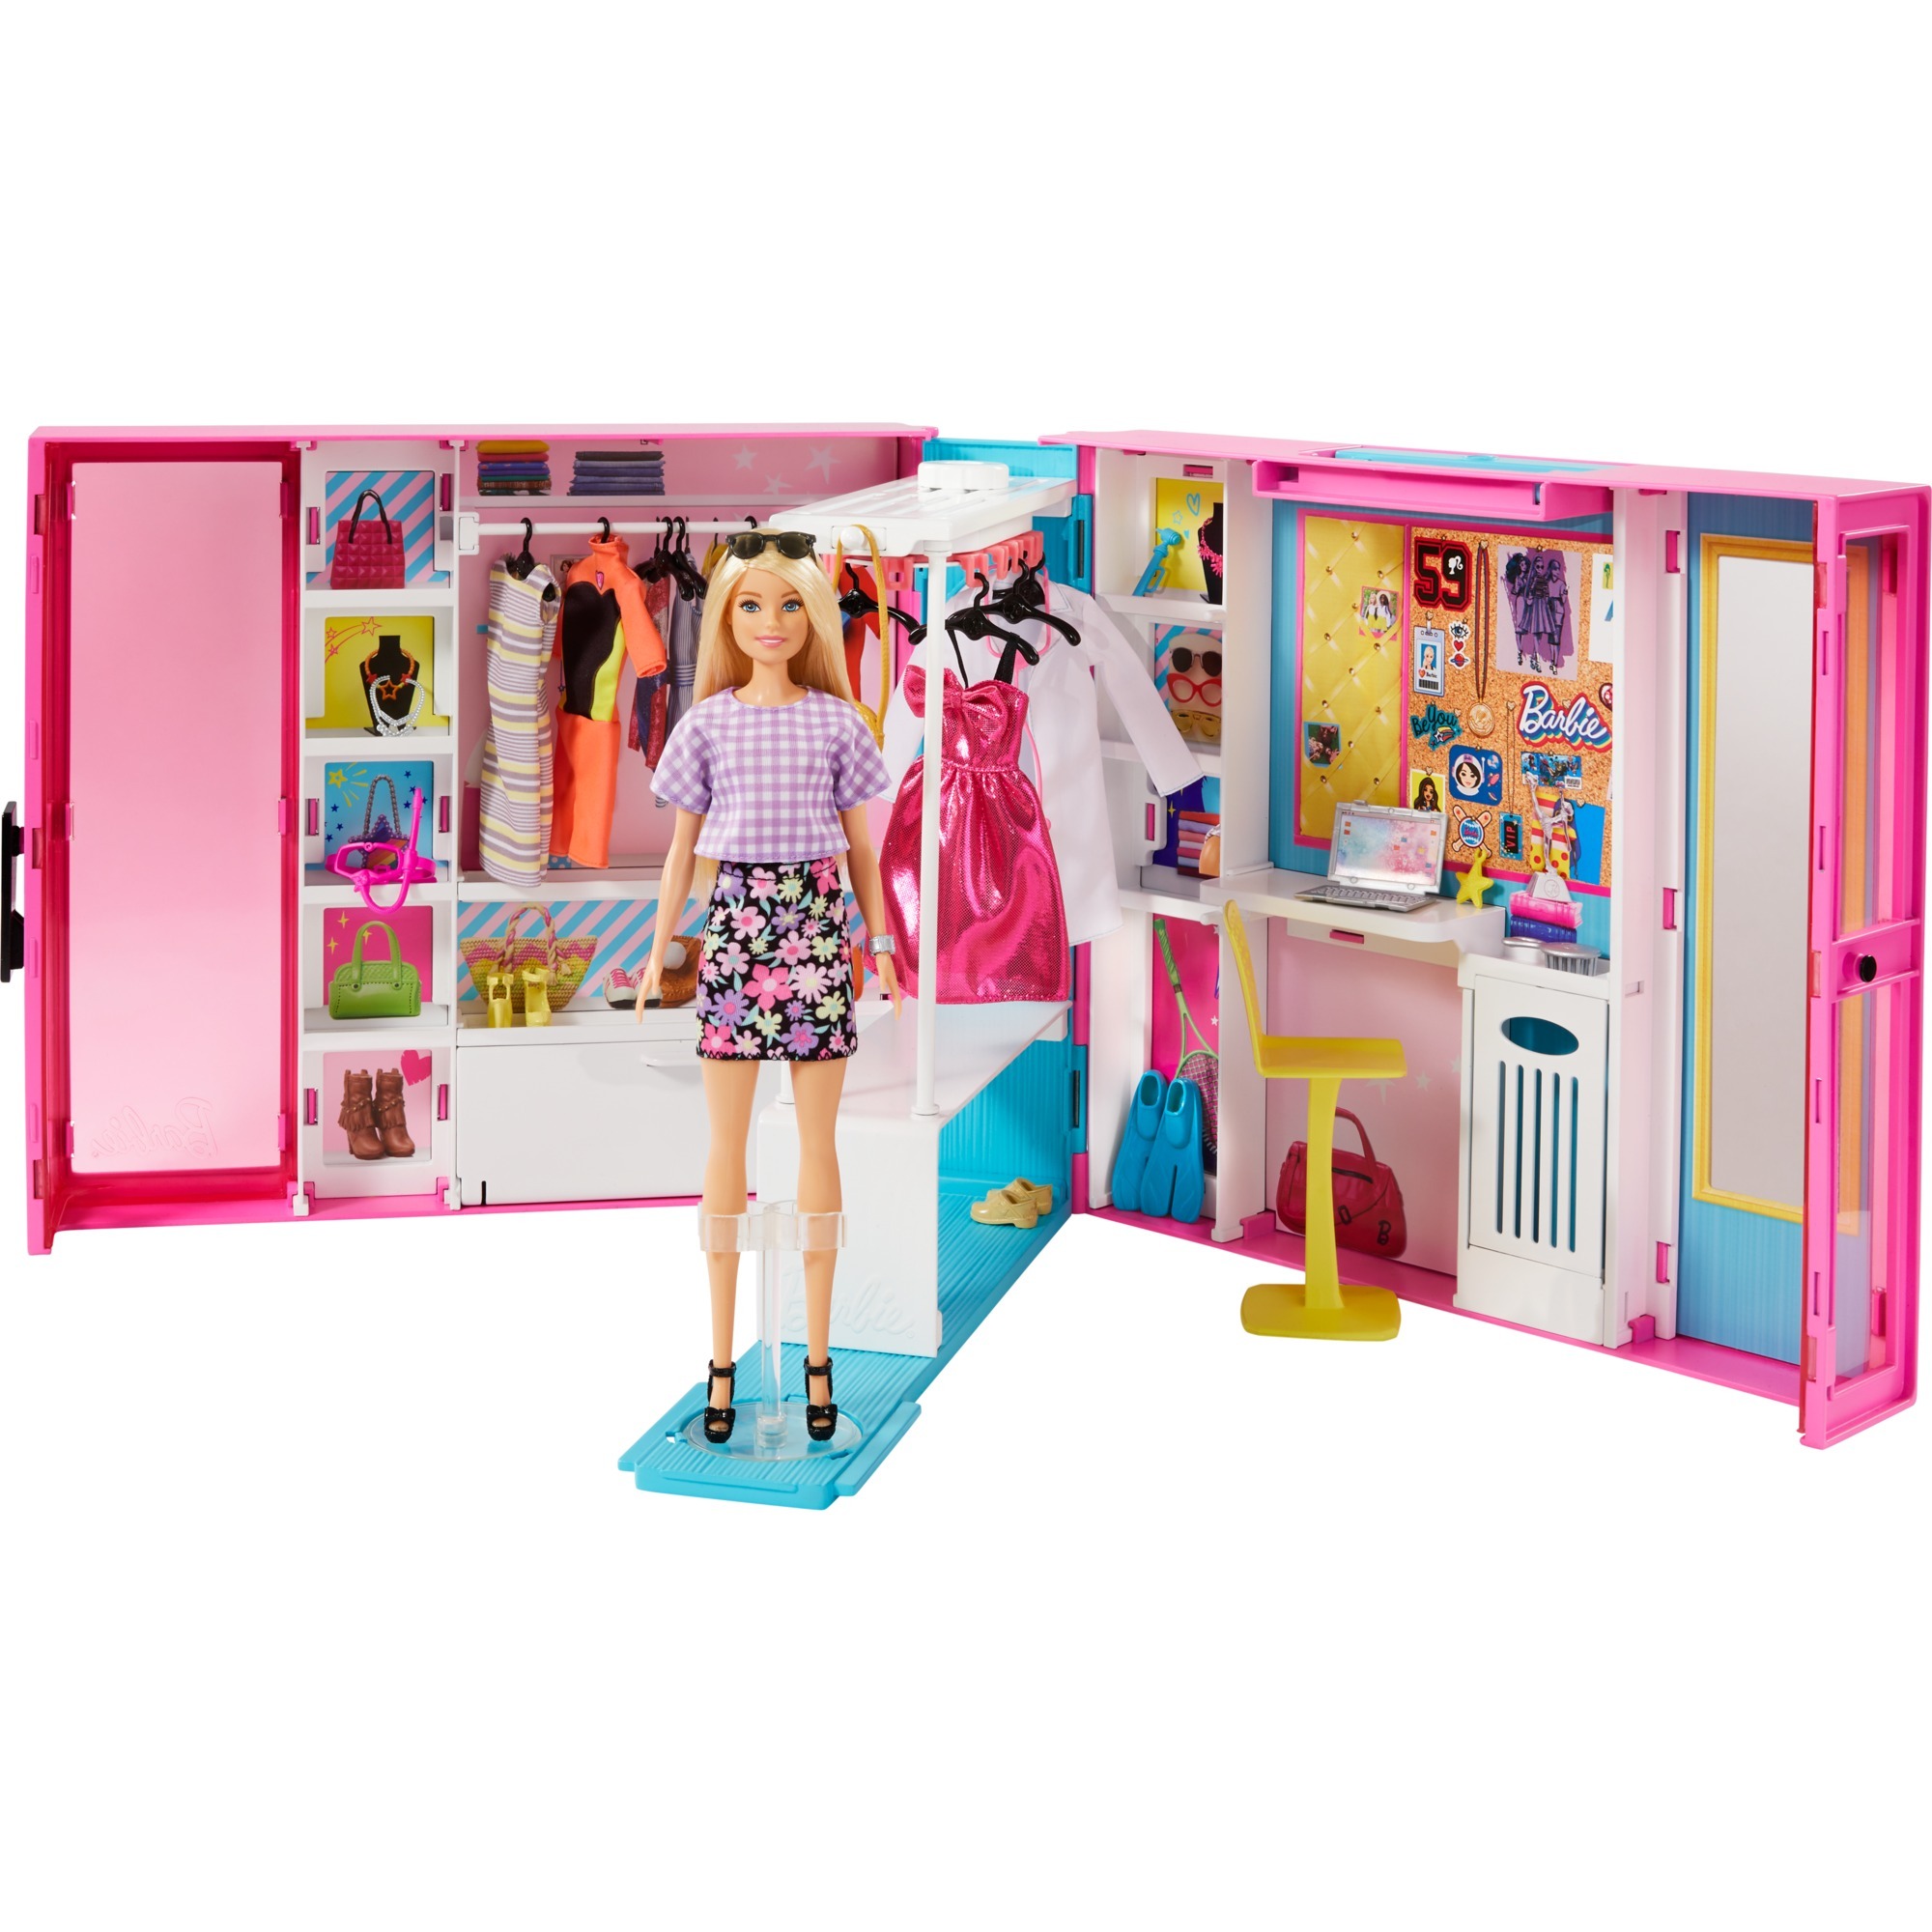 Image of Alternate - Barbie Traum Kleiderschrank ausklappbar, Puppe online einkaufen bei Alternate